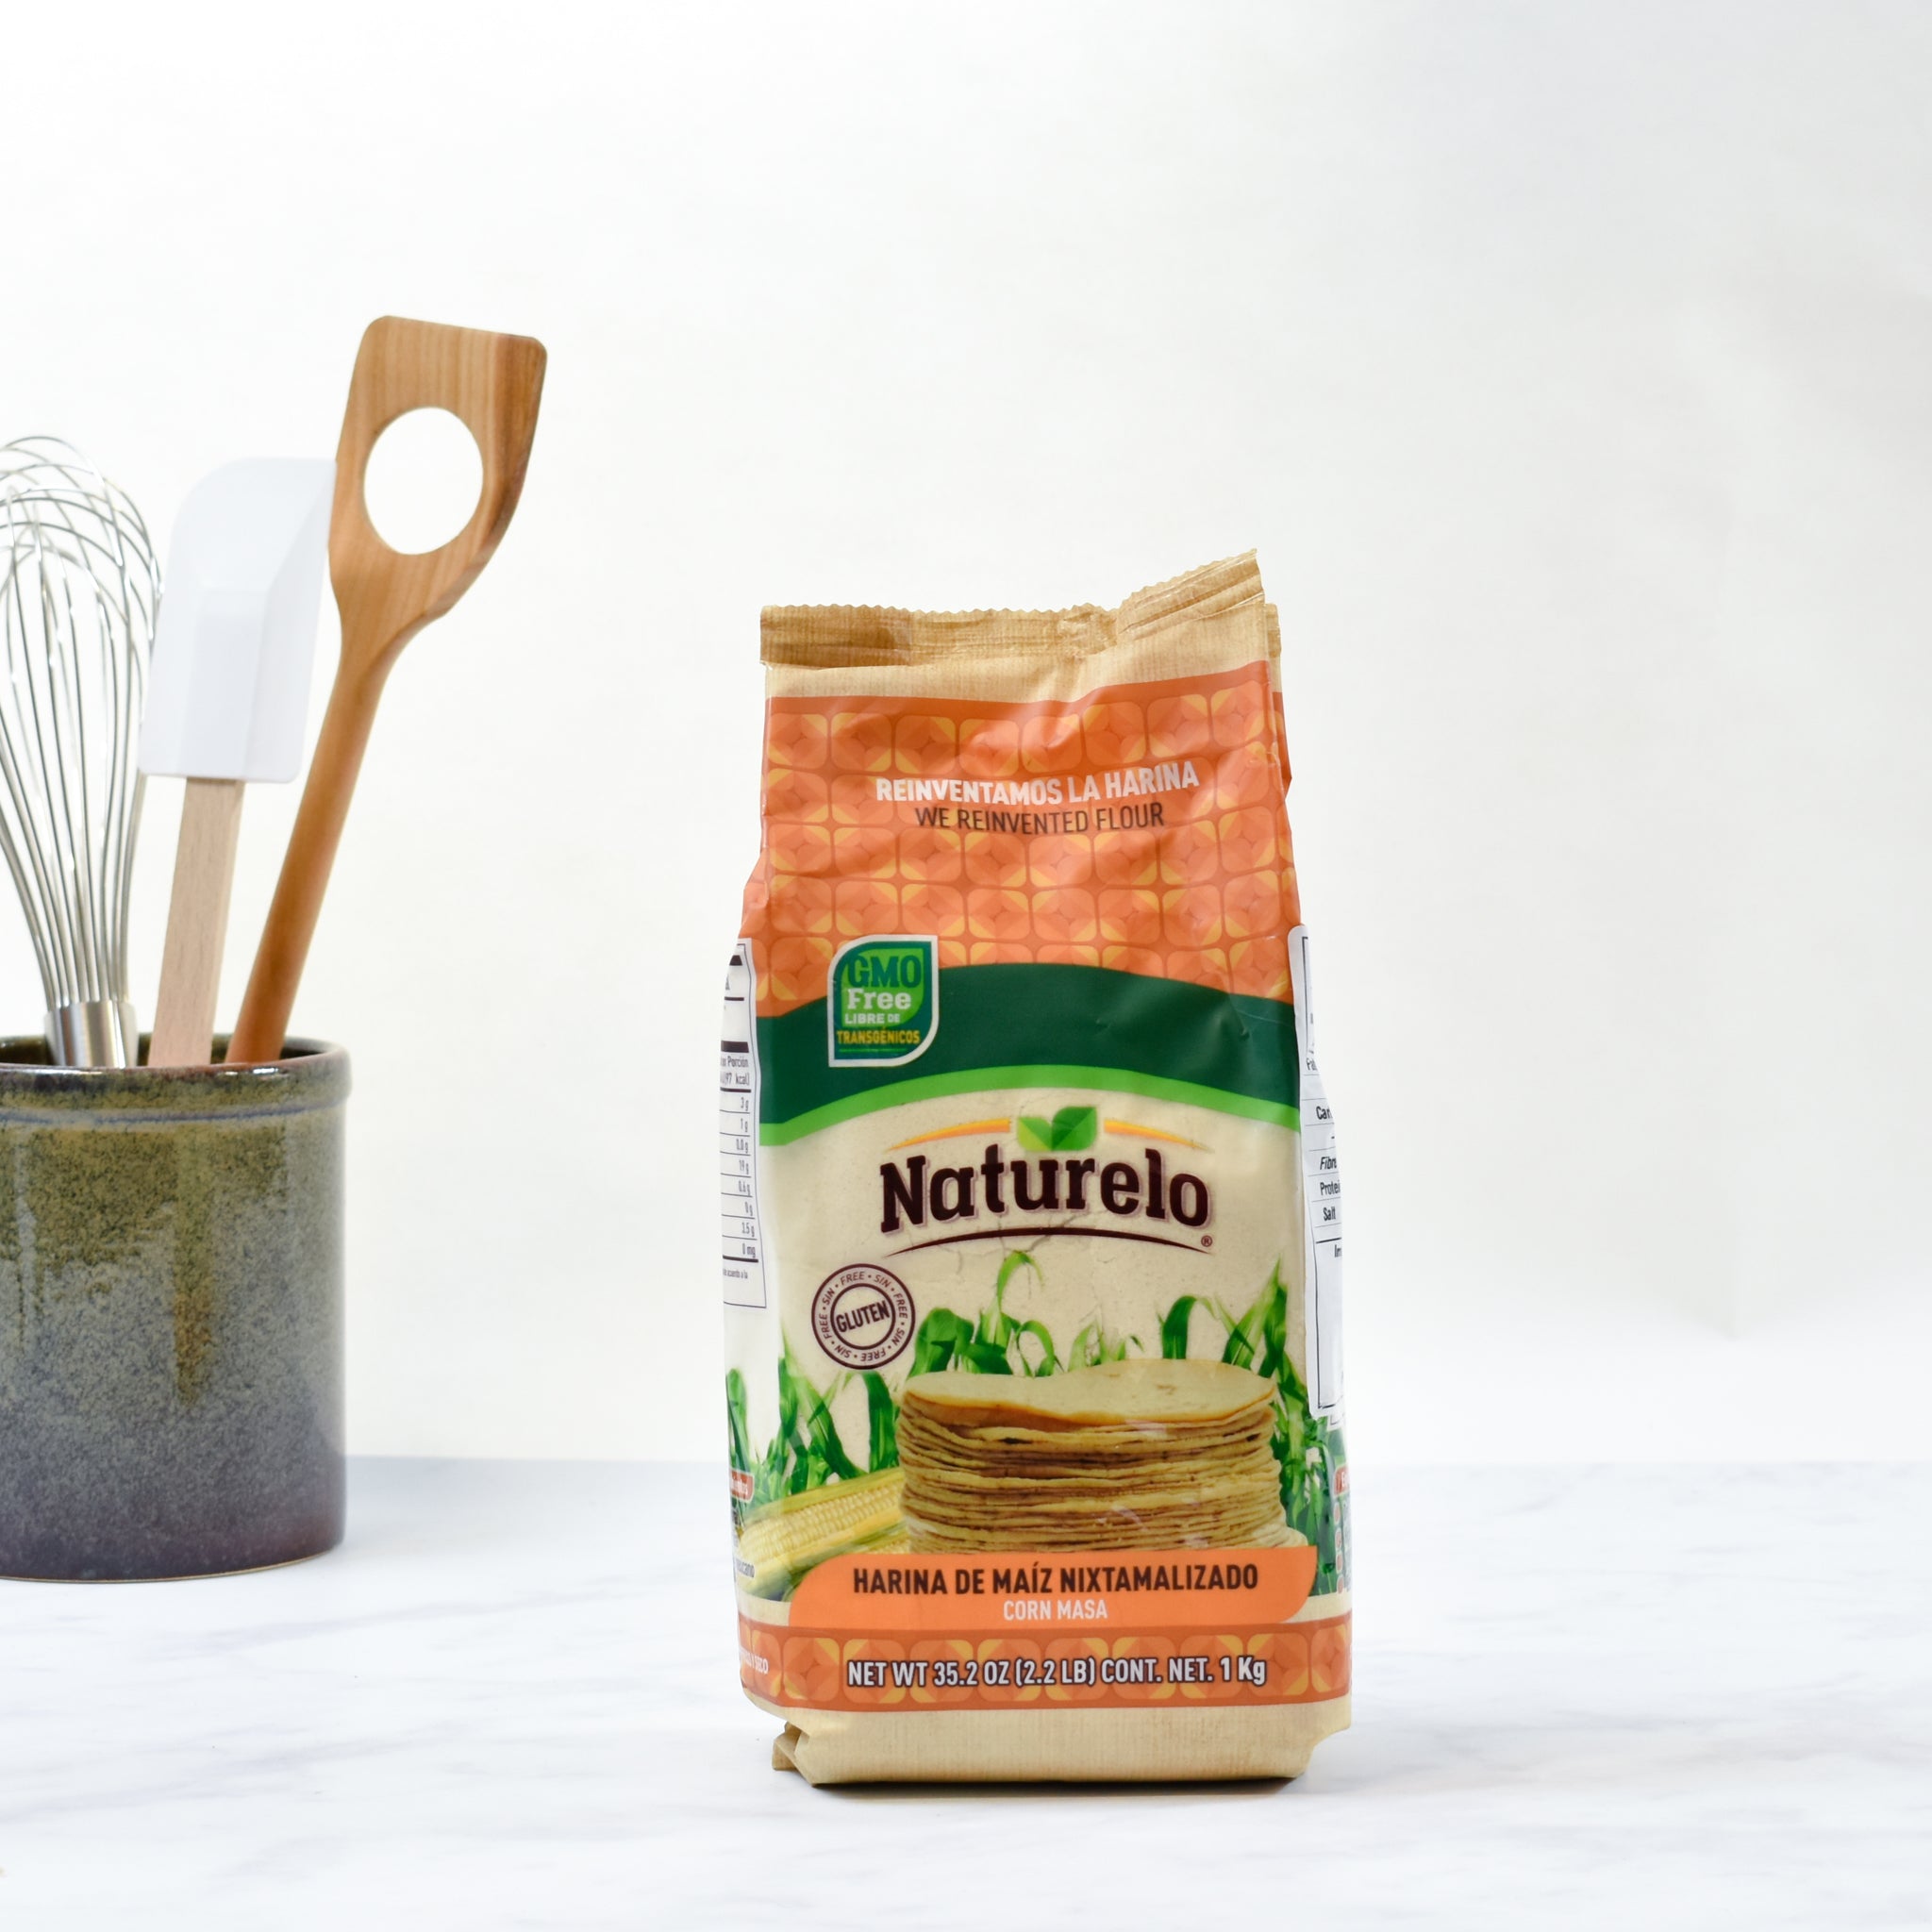 Naturelo White Masa Harina Ingredients Flour Grains & Seeds lifestyle packaging shot